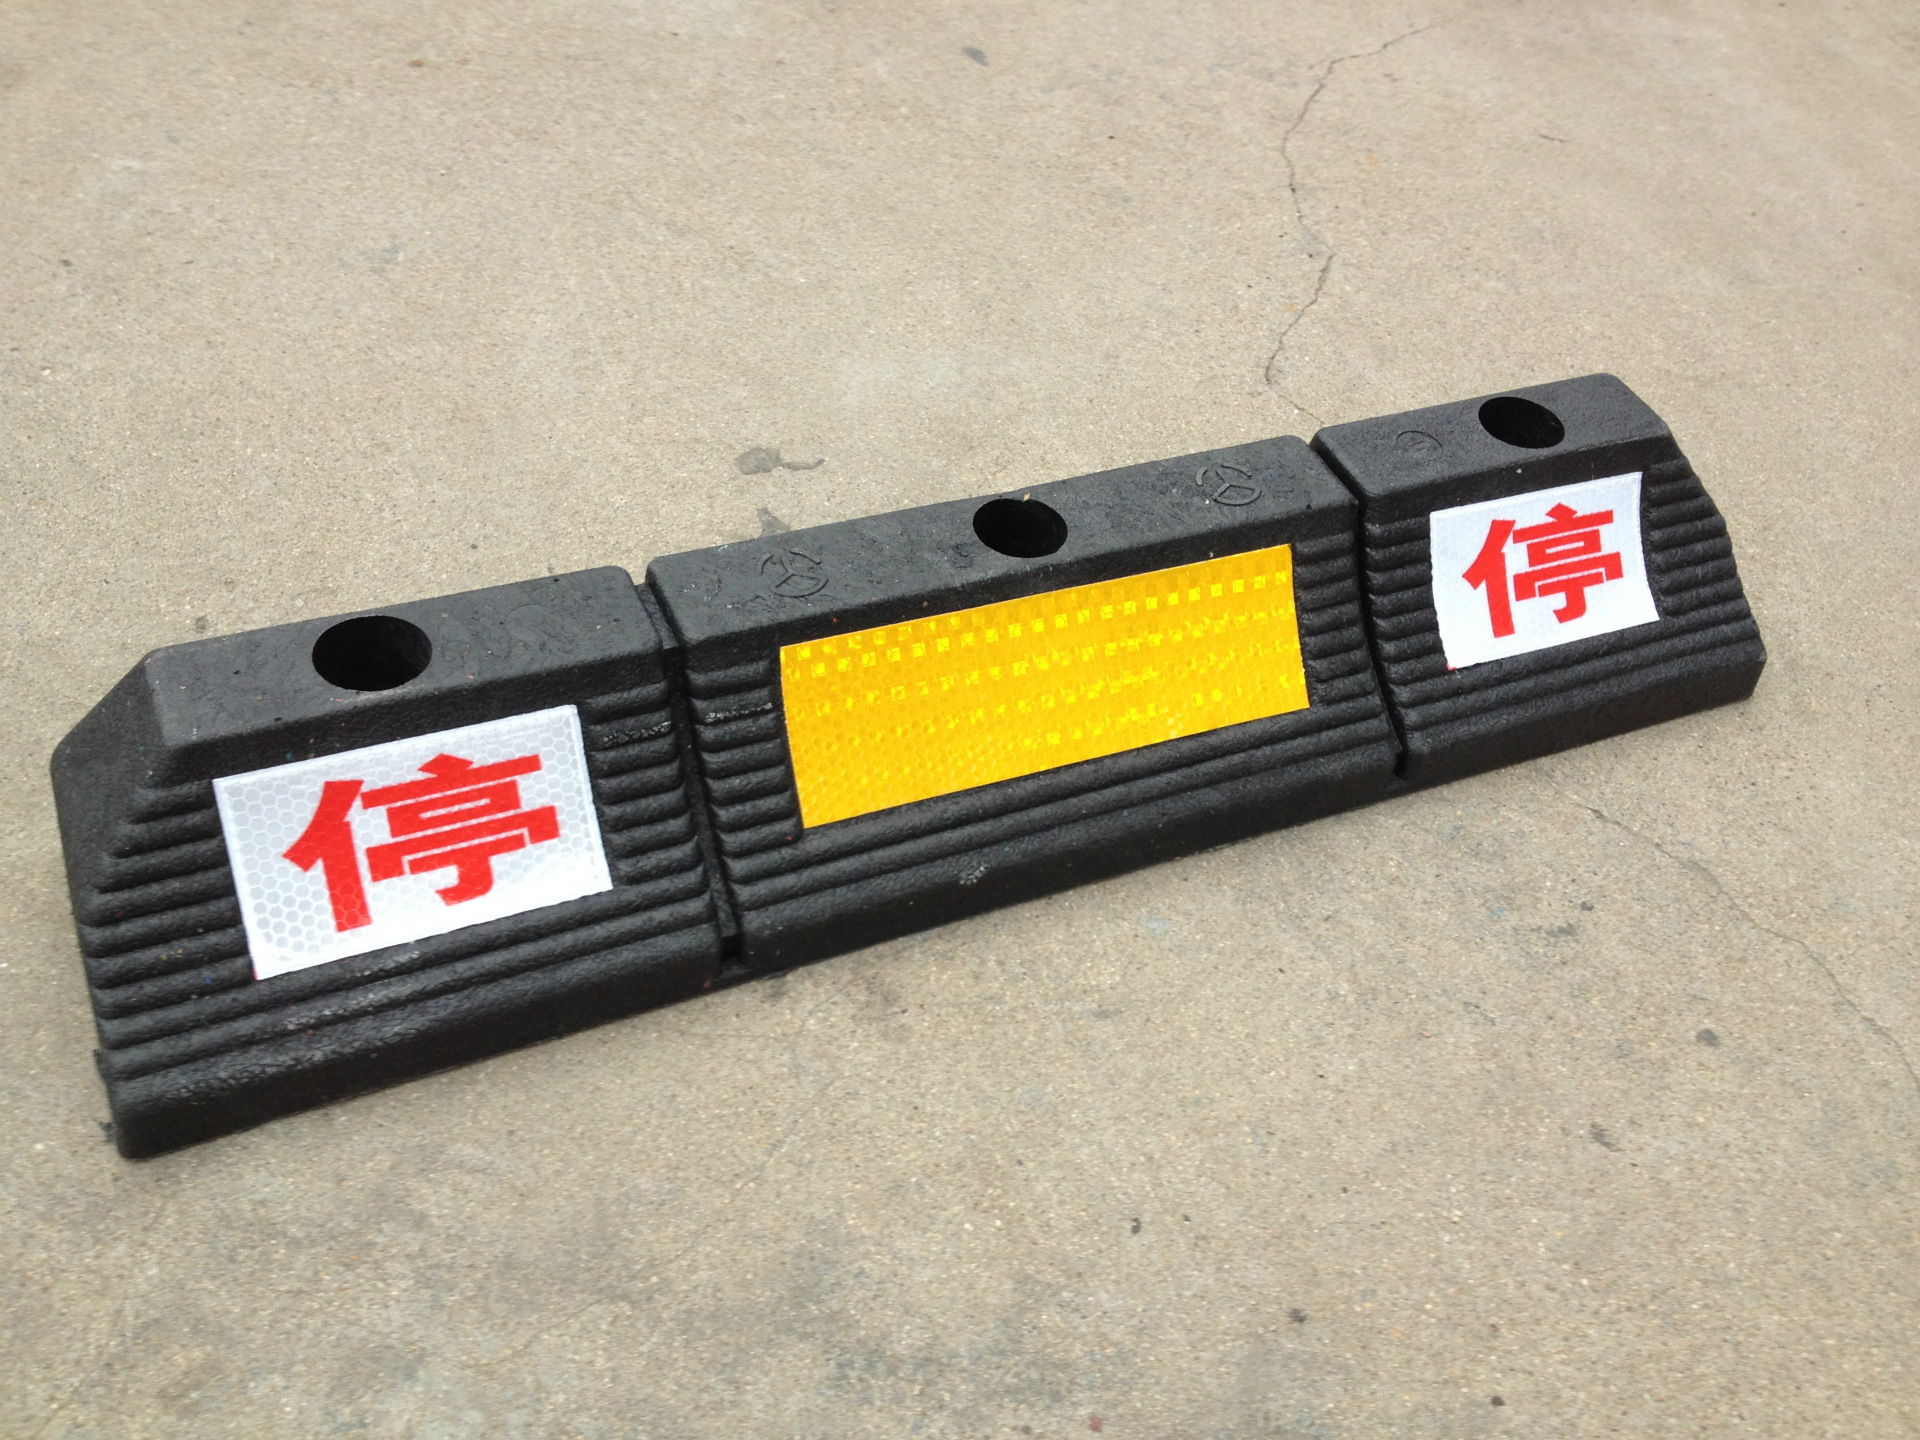 橡塑止滑定位器 橡胶实心停车定位器 反光橡塑定位器 厂家定制